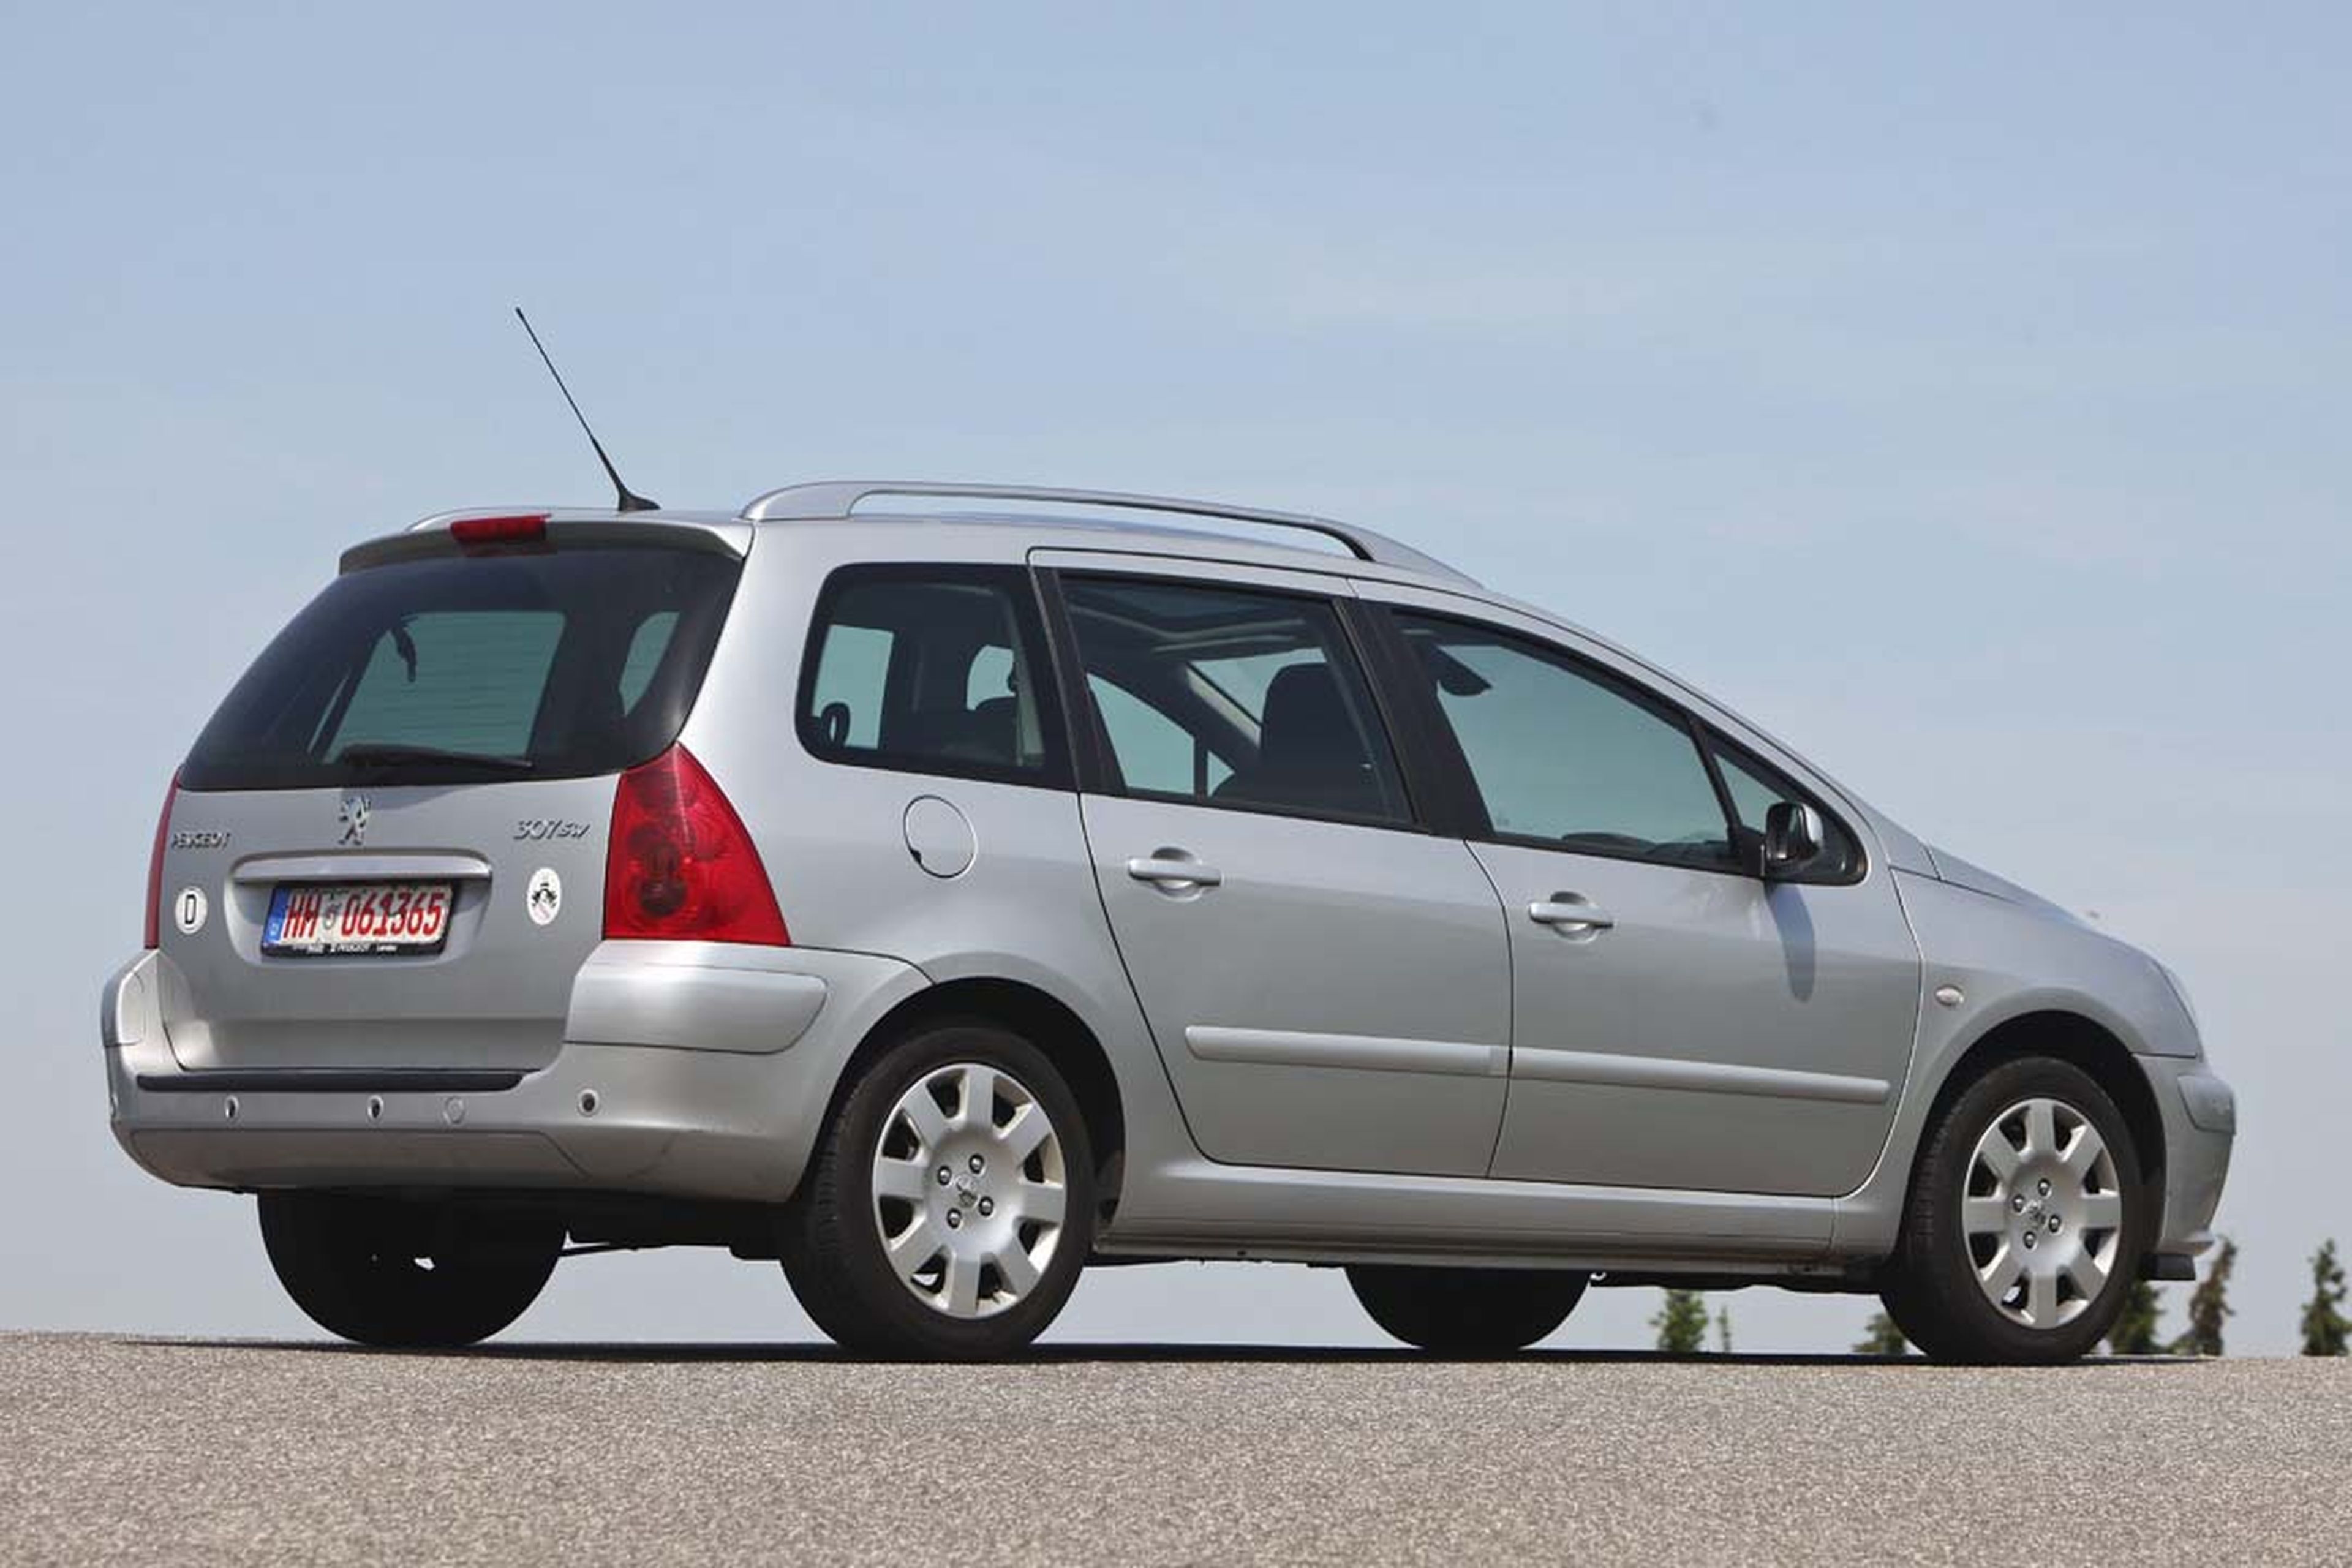 Peugeot 307 nacional vs importado: ¿qué diferencias había